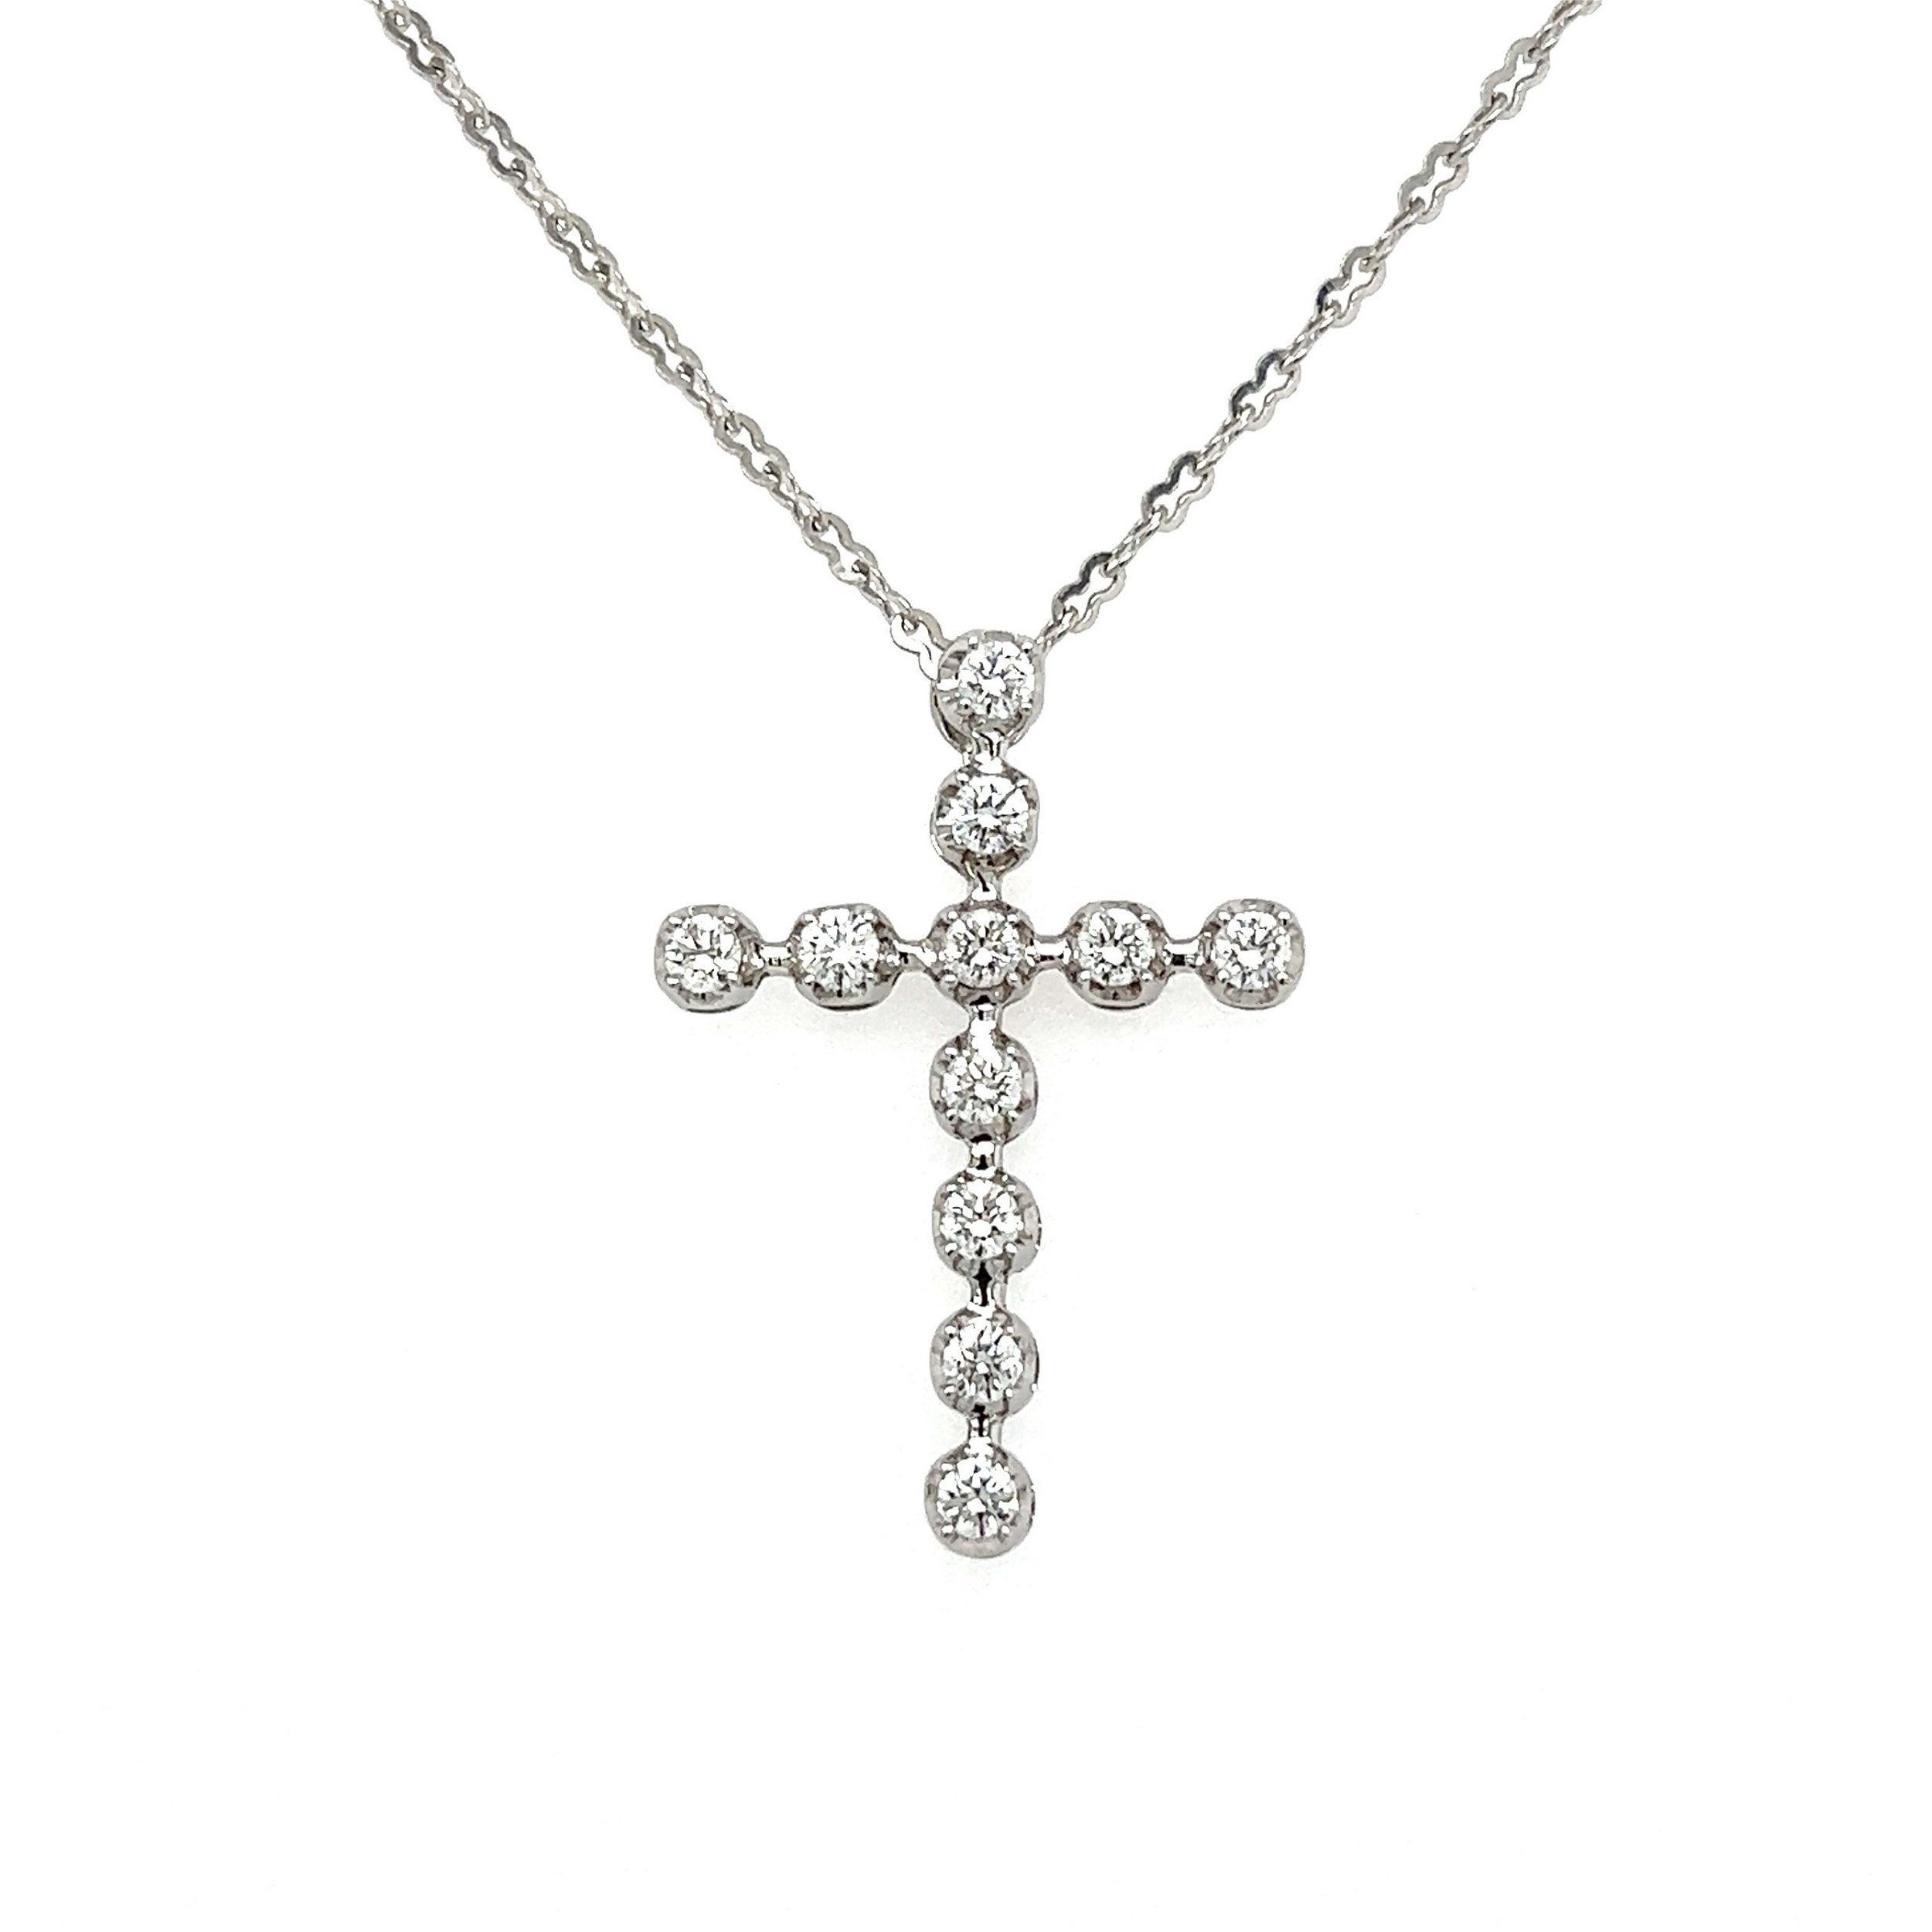 18K WG .79tcw RBC 11 Diamond Cross Necklace 4.7g on 18" Link Chain